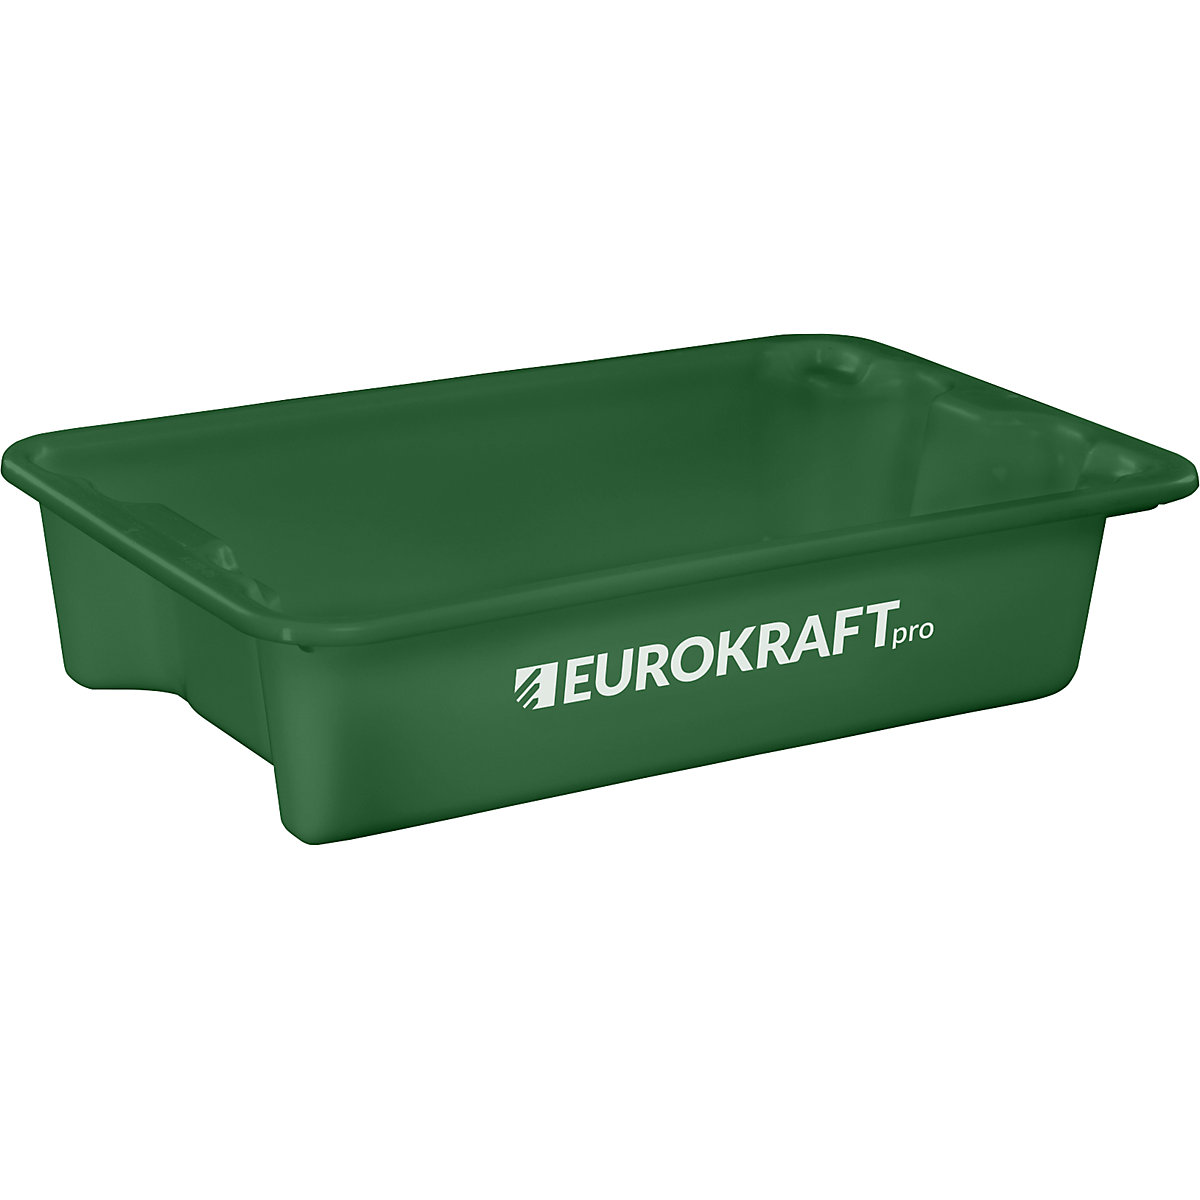 EUROKRAFTpro – Otočná stohovací nádoba z polypropylenu vhodného pro potraviny, obsah 18 litrů, bal.j. 3 ks, stěny a dno plné, zelená